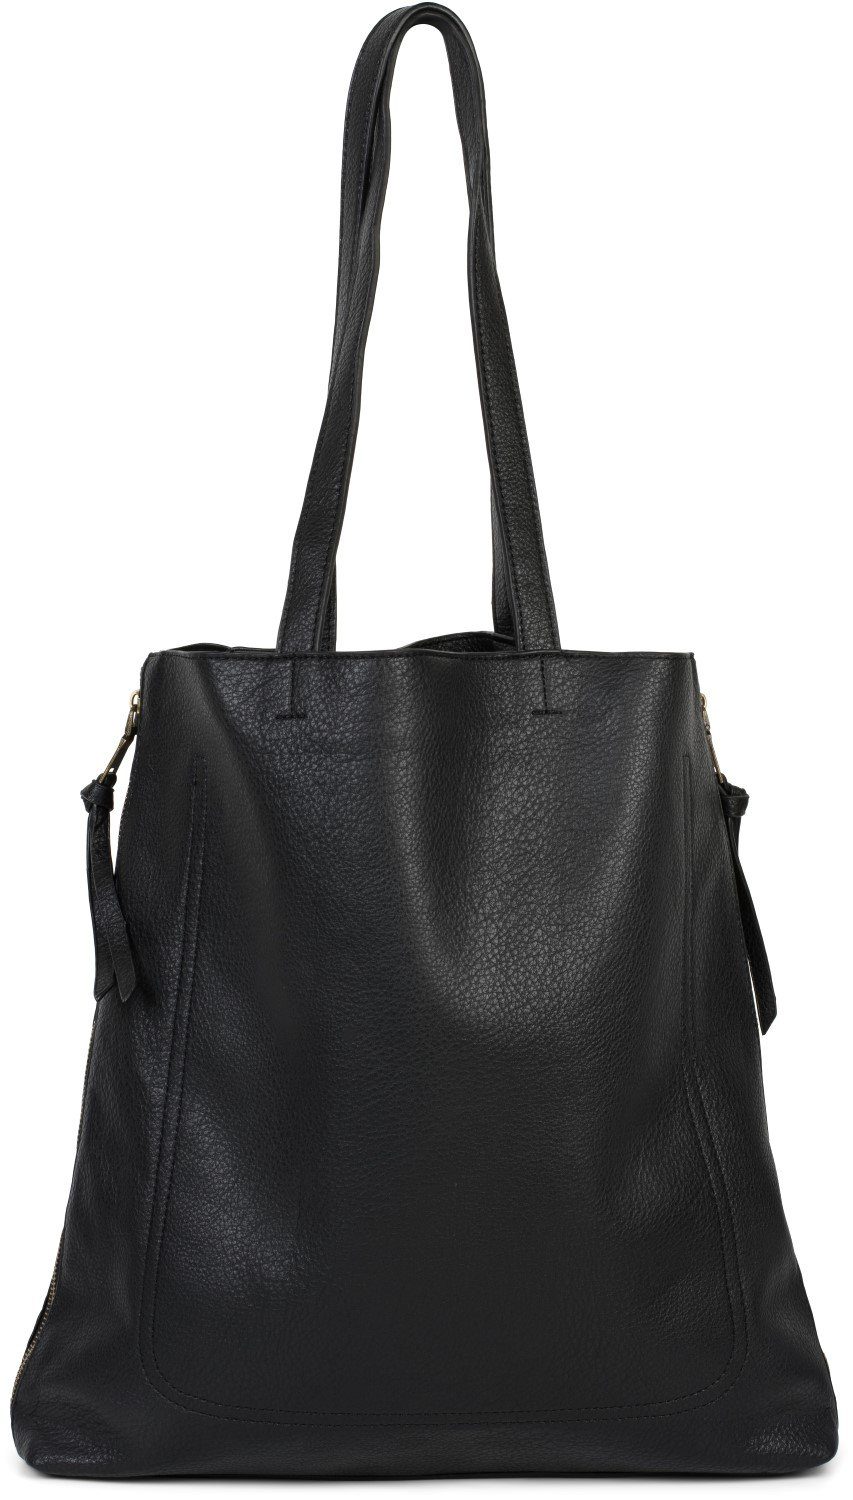 Damen Handtaschen styleBREAKER Schultertasche, Tote Bag mit seitlichen Reißverschlüssen